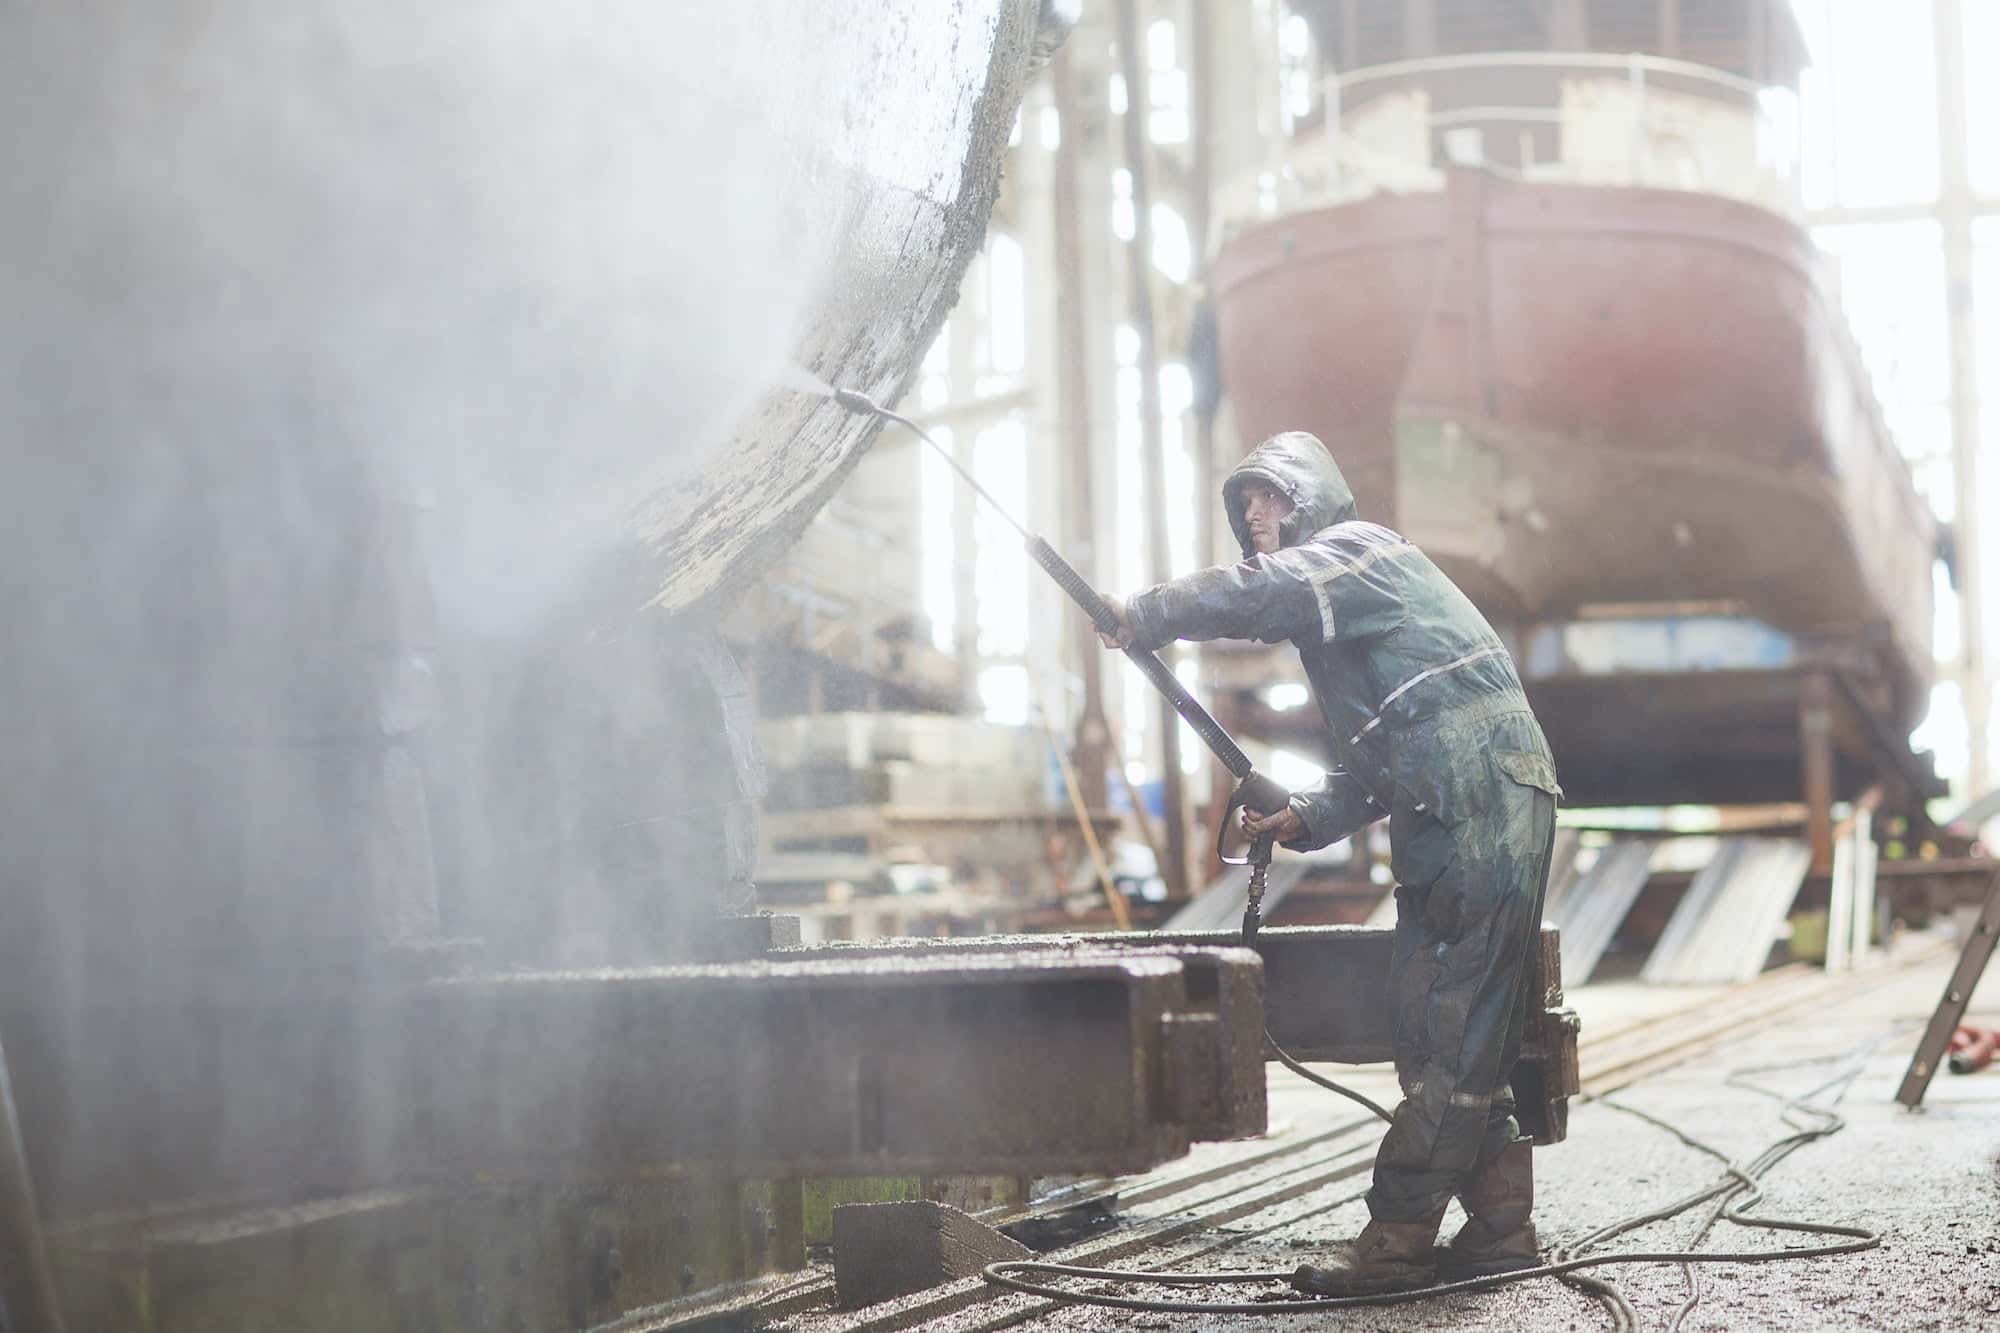 Worker using high pressure hose on boat in shipyard workshop